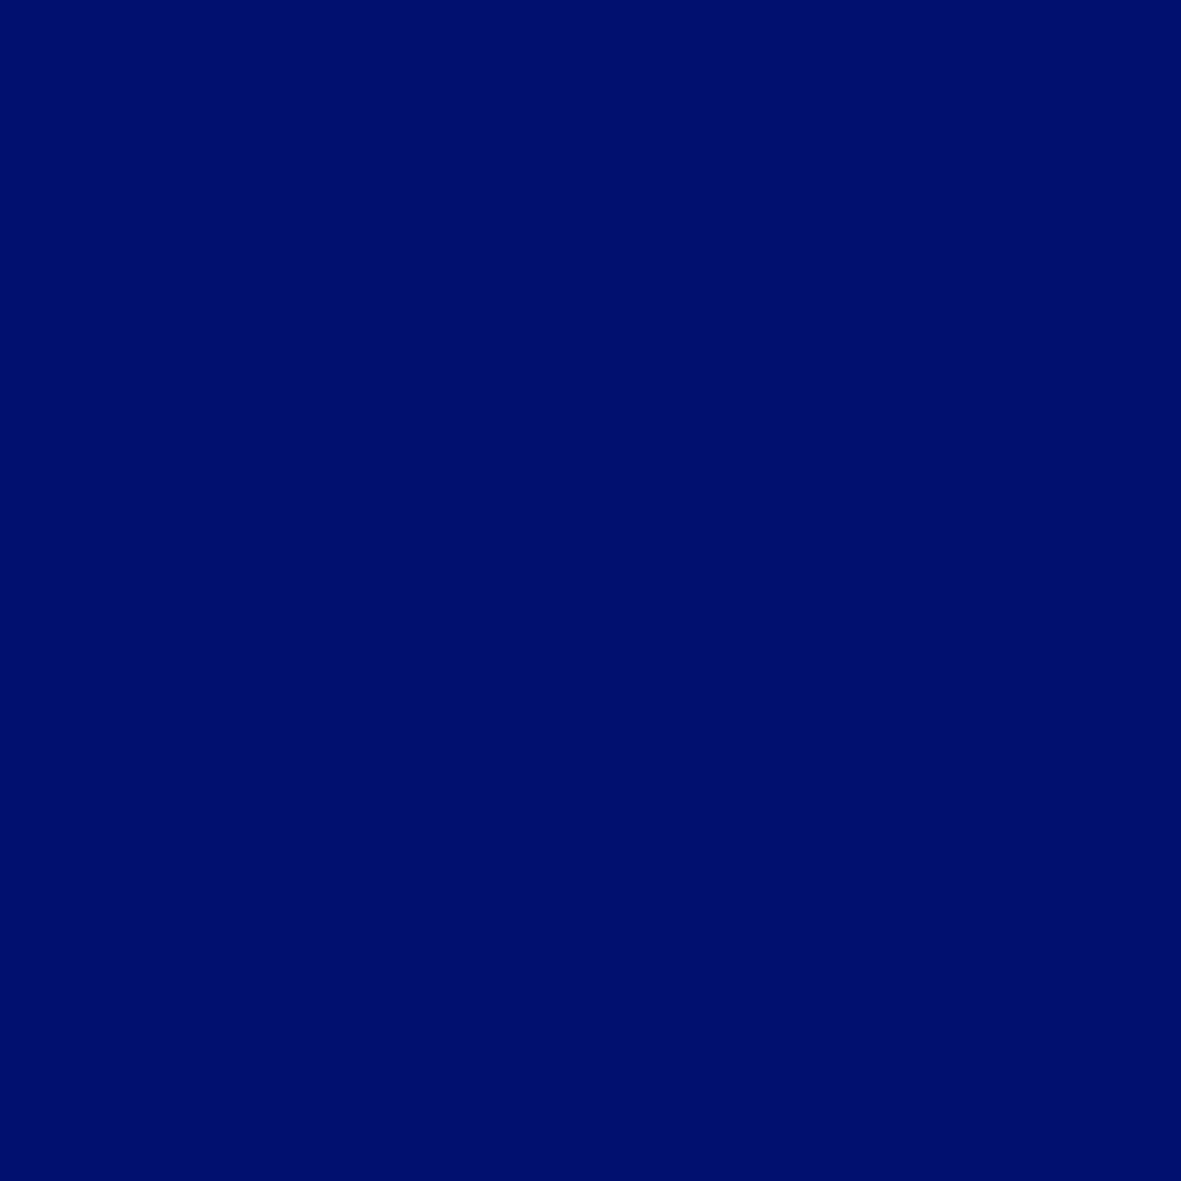 Gravotherm Folienfarbe Tiefblau für Texte, Logos und Muster 